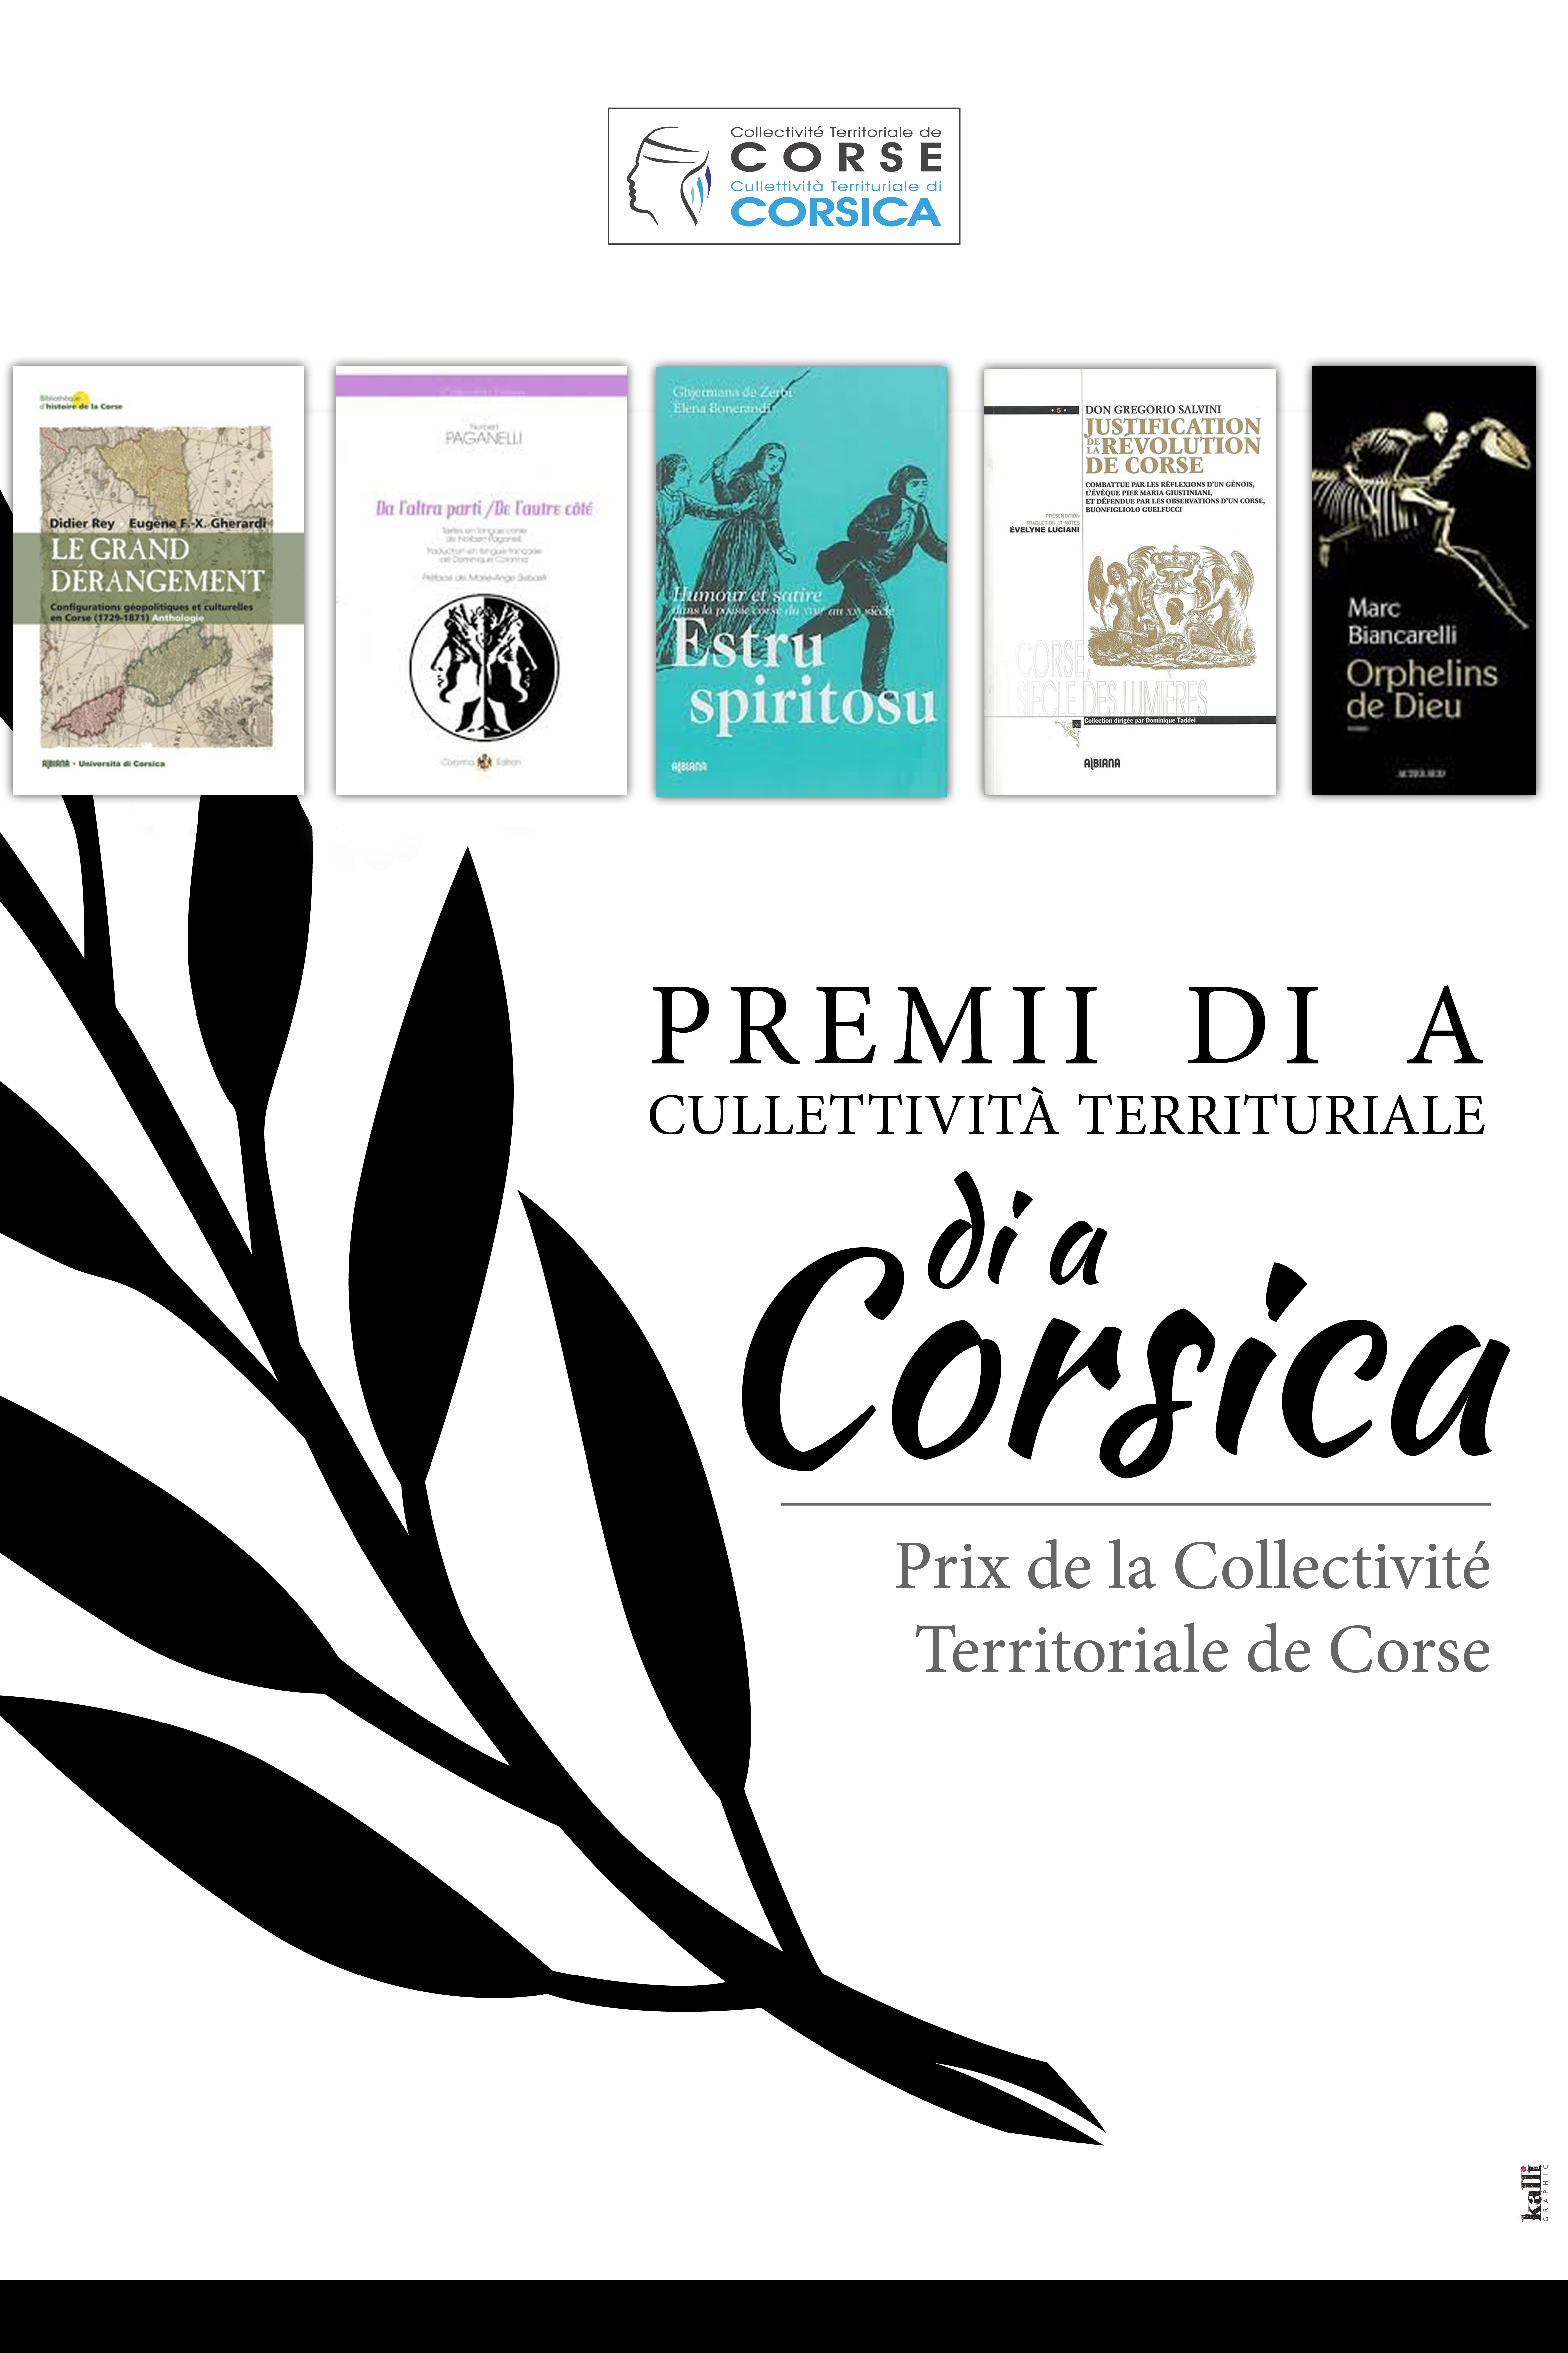 Affissu di i Premii 2014 di a Cullettività Territuriale di Corsica